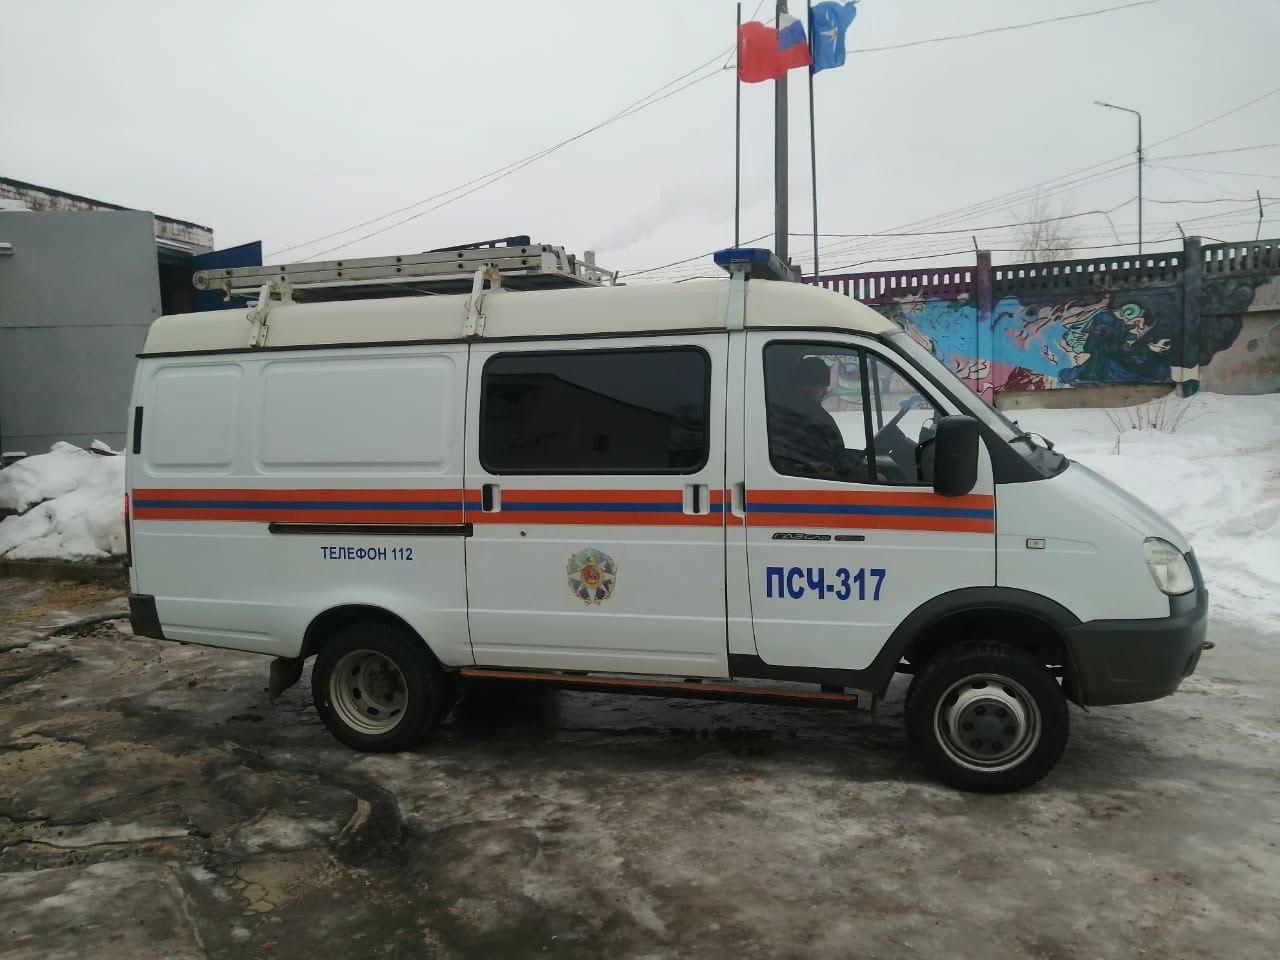 Работники «Мособлпожспас» освободили из запертой квартиры двух пожилых инвалидов в Долгопрудном